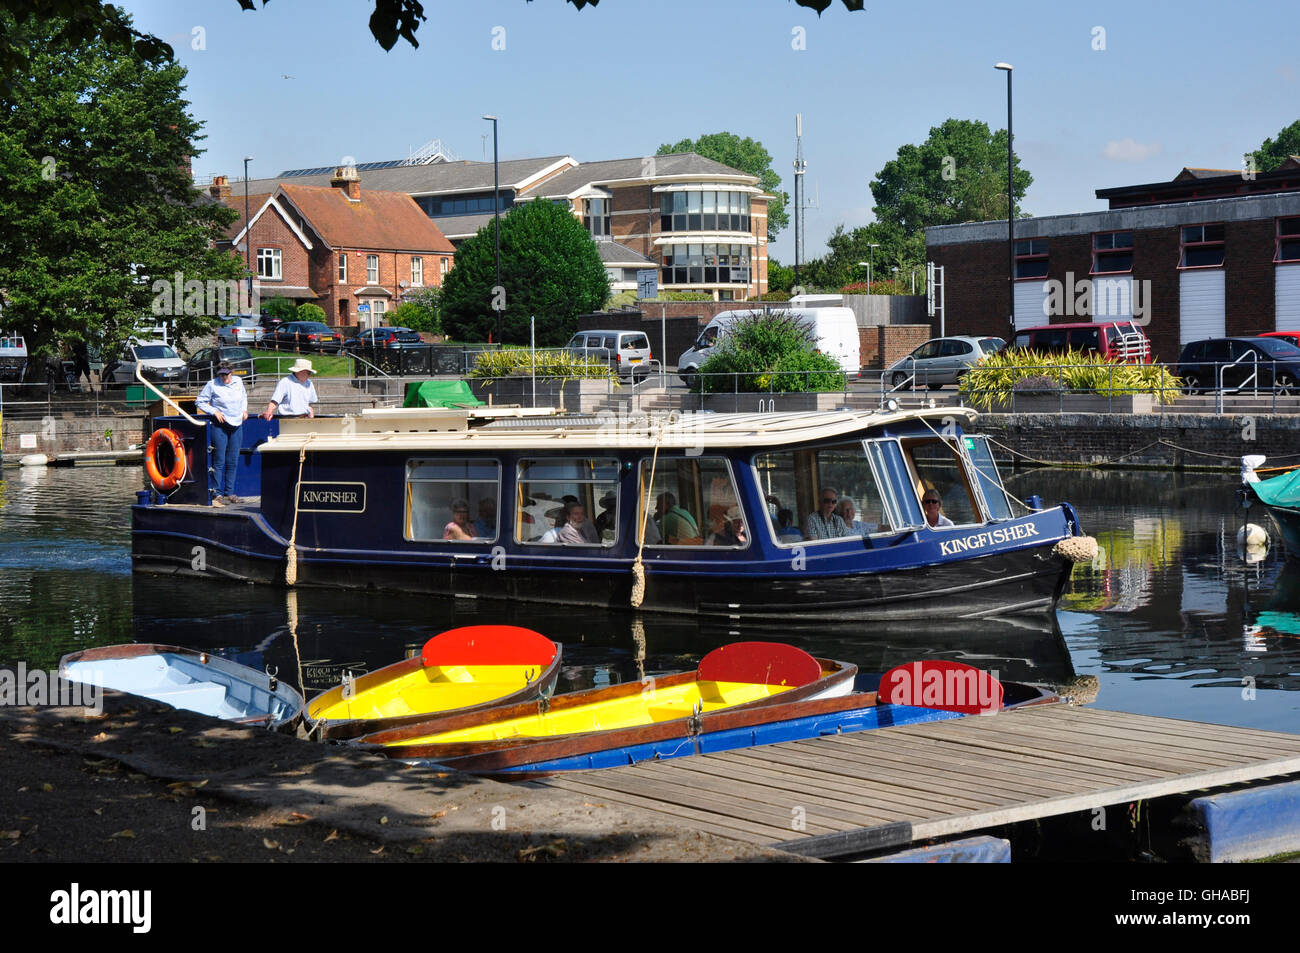 Chichester - bassin du canal - la lumière du soleil et les ombres - bateaux amarrés - Réflexions - bateau de croisière touristique à Chichester Harbour Banque D'Images